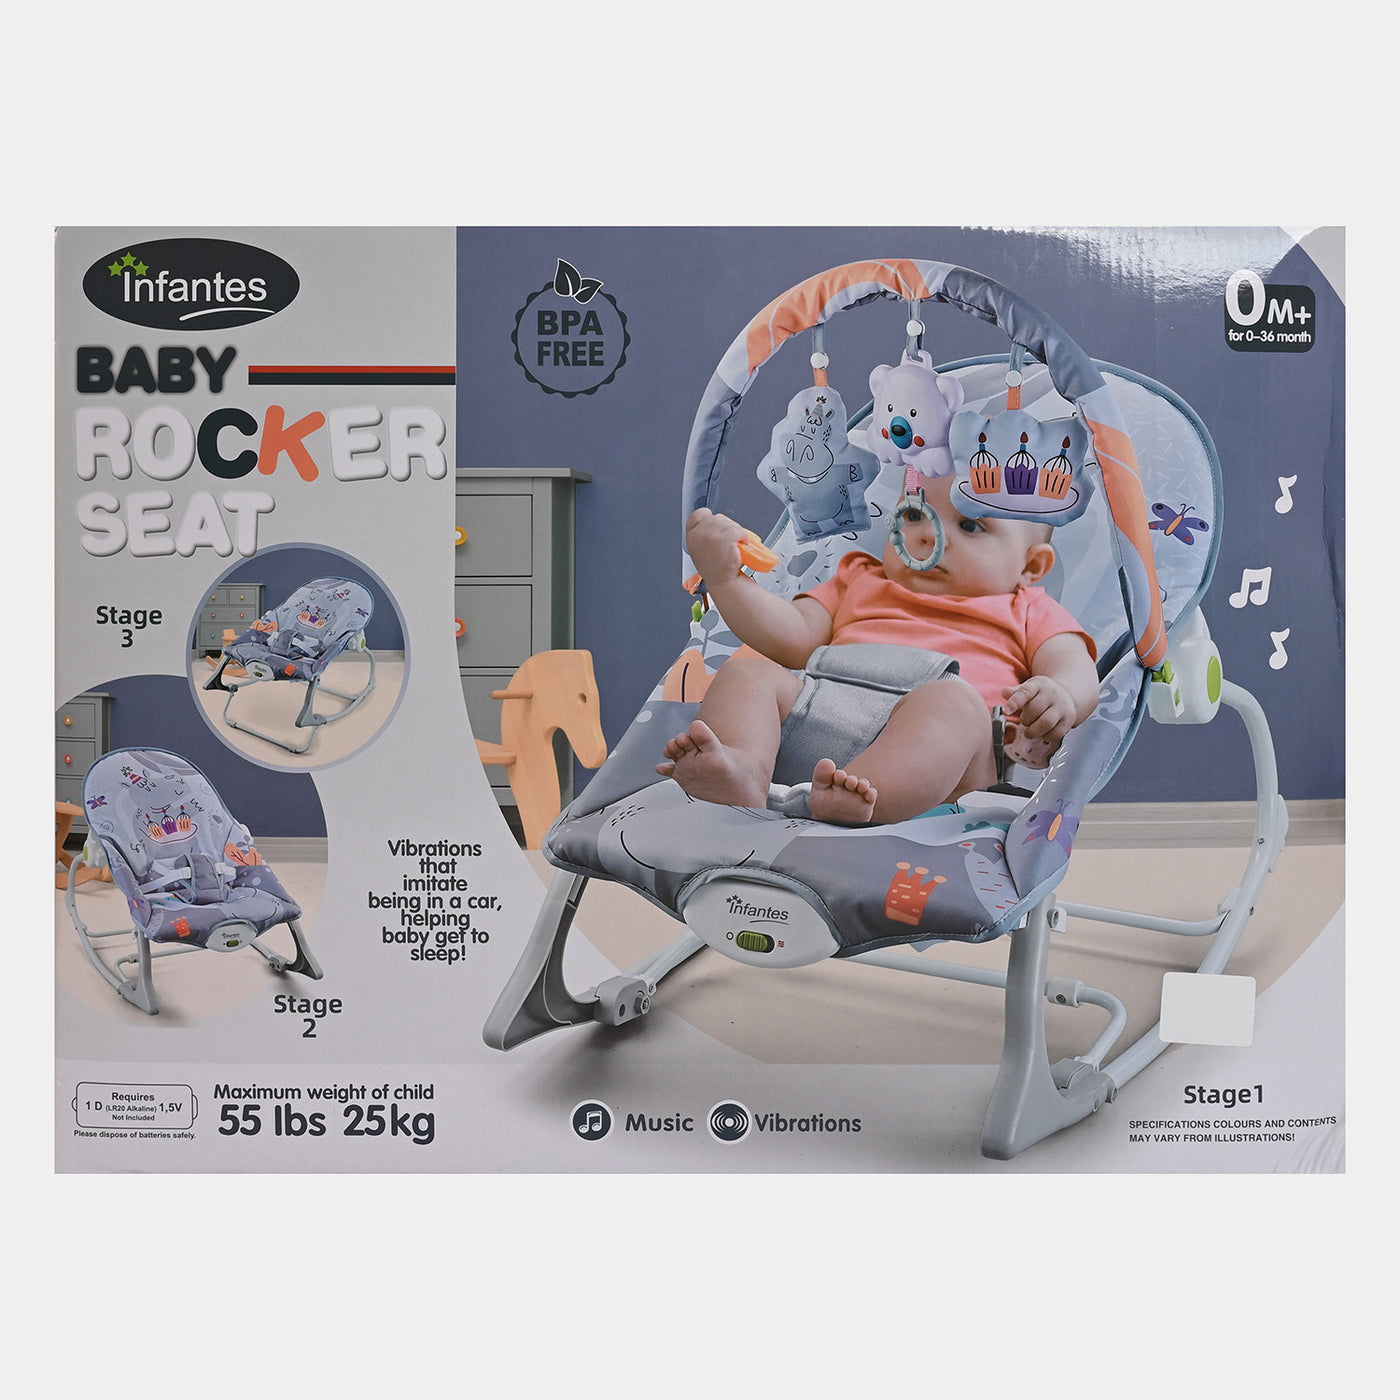 Infants Baby Rocker Seat